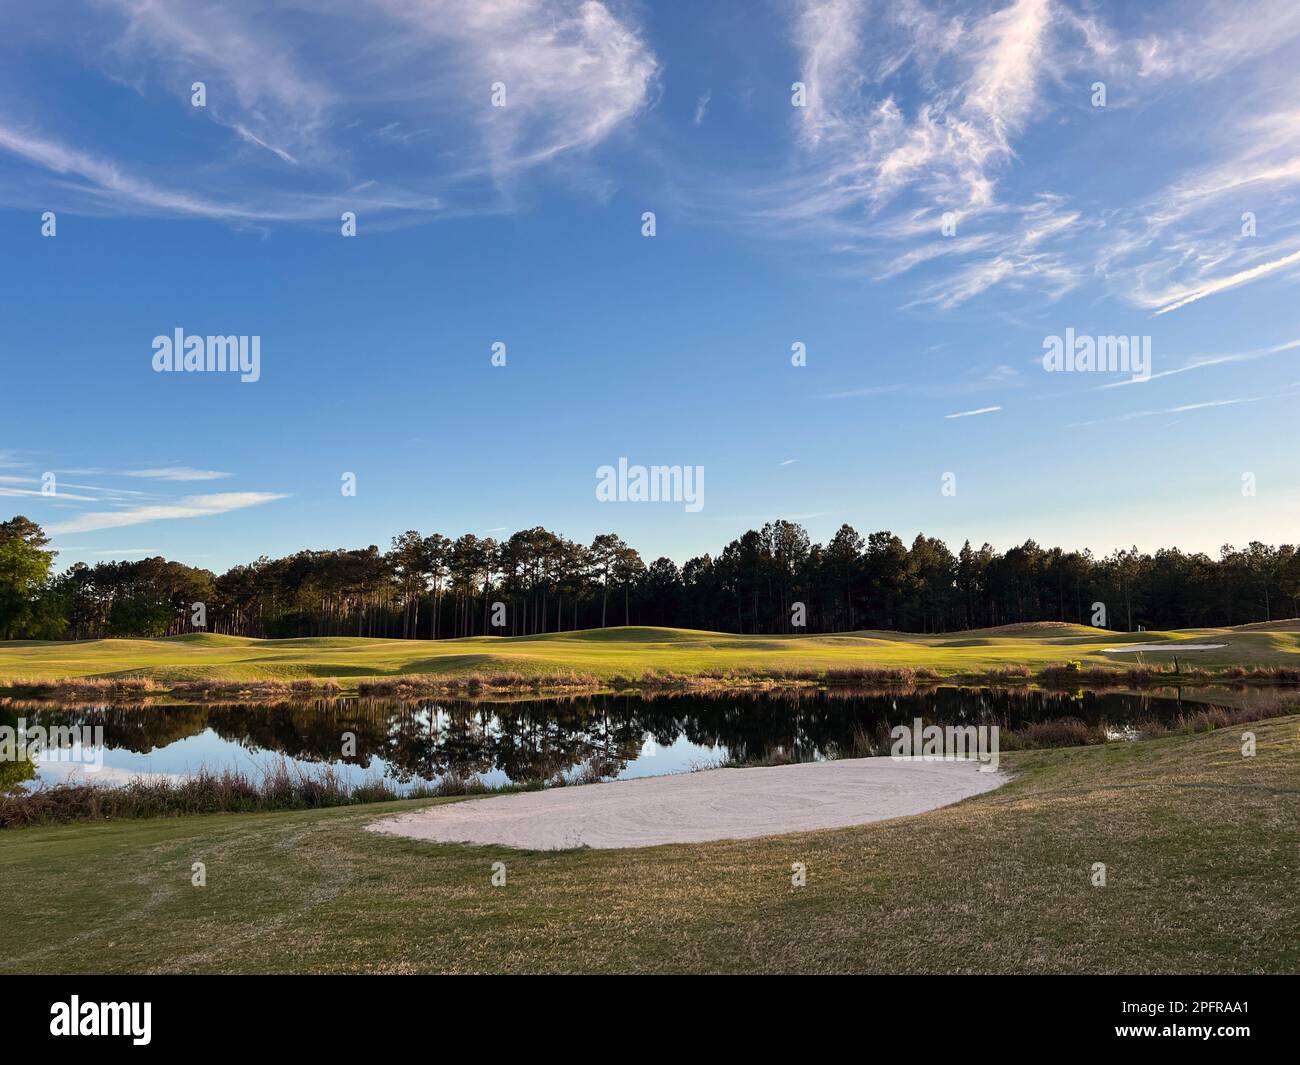 L'ora d'oro in un campo da golf del Georgia state Park, una popolare destinazione per il golf nel sud degli Stati Uniti. Foto Stock